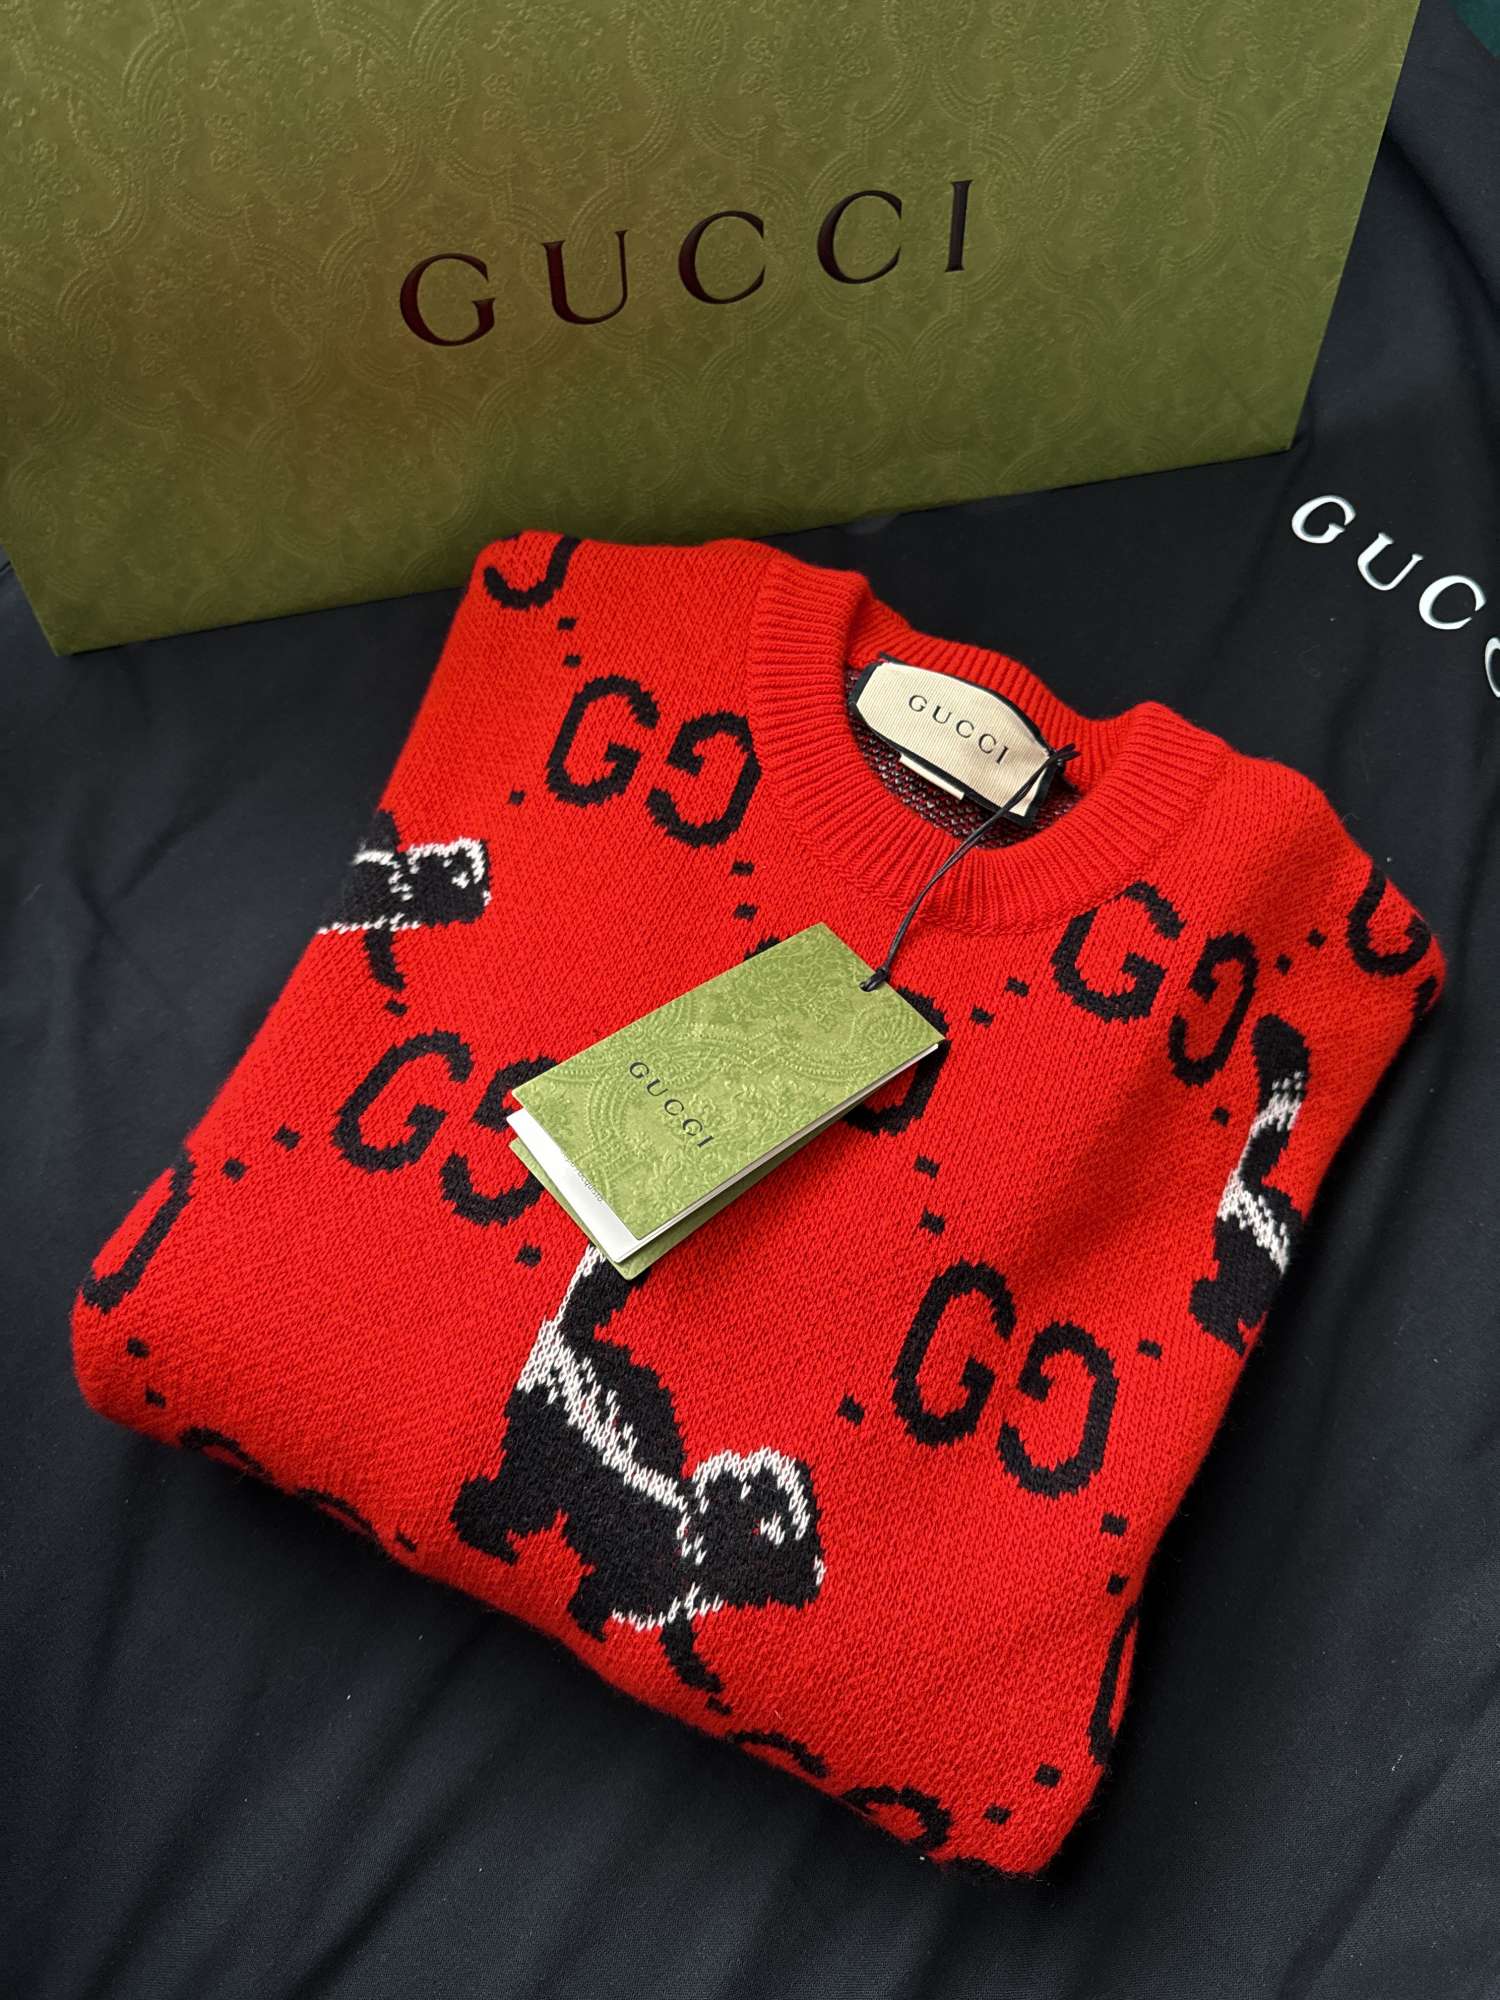 Gucci sveter velkost S